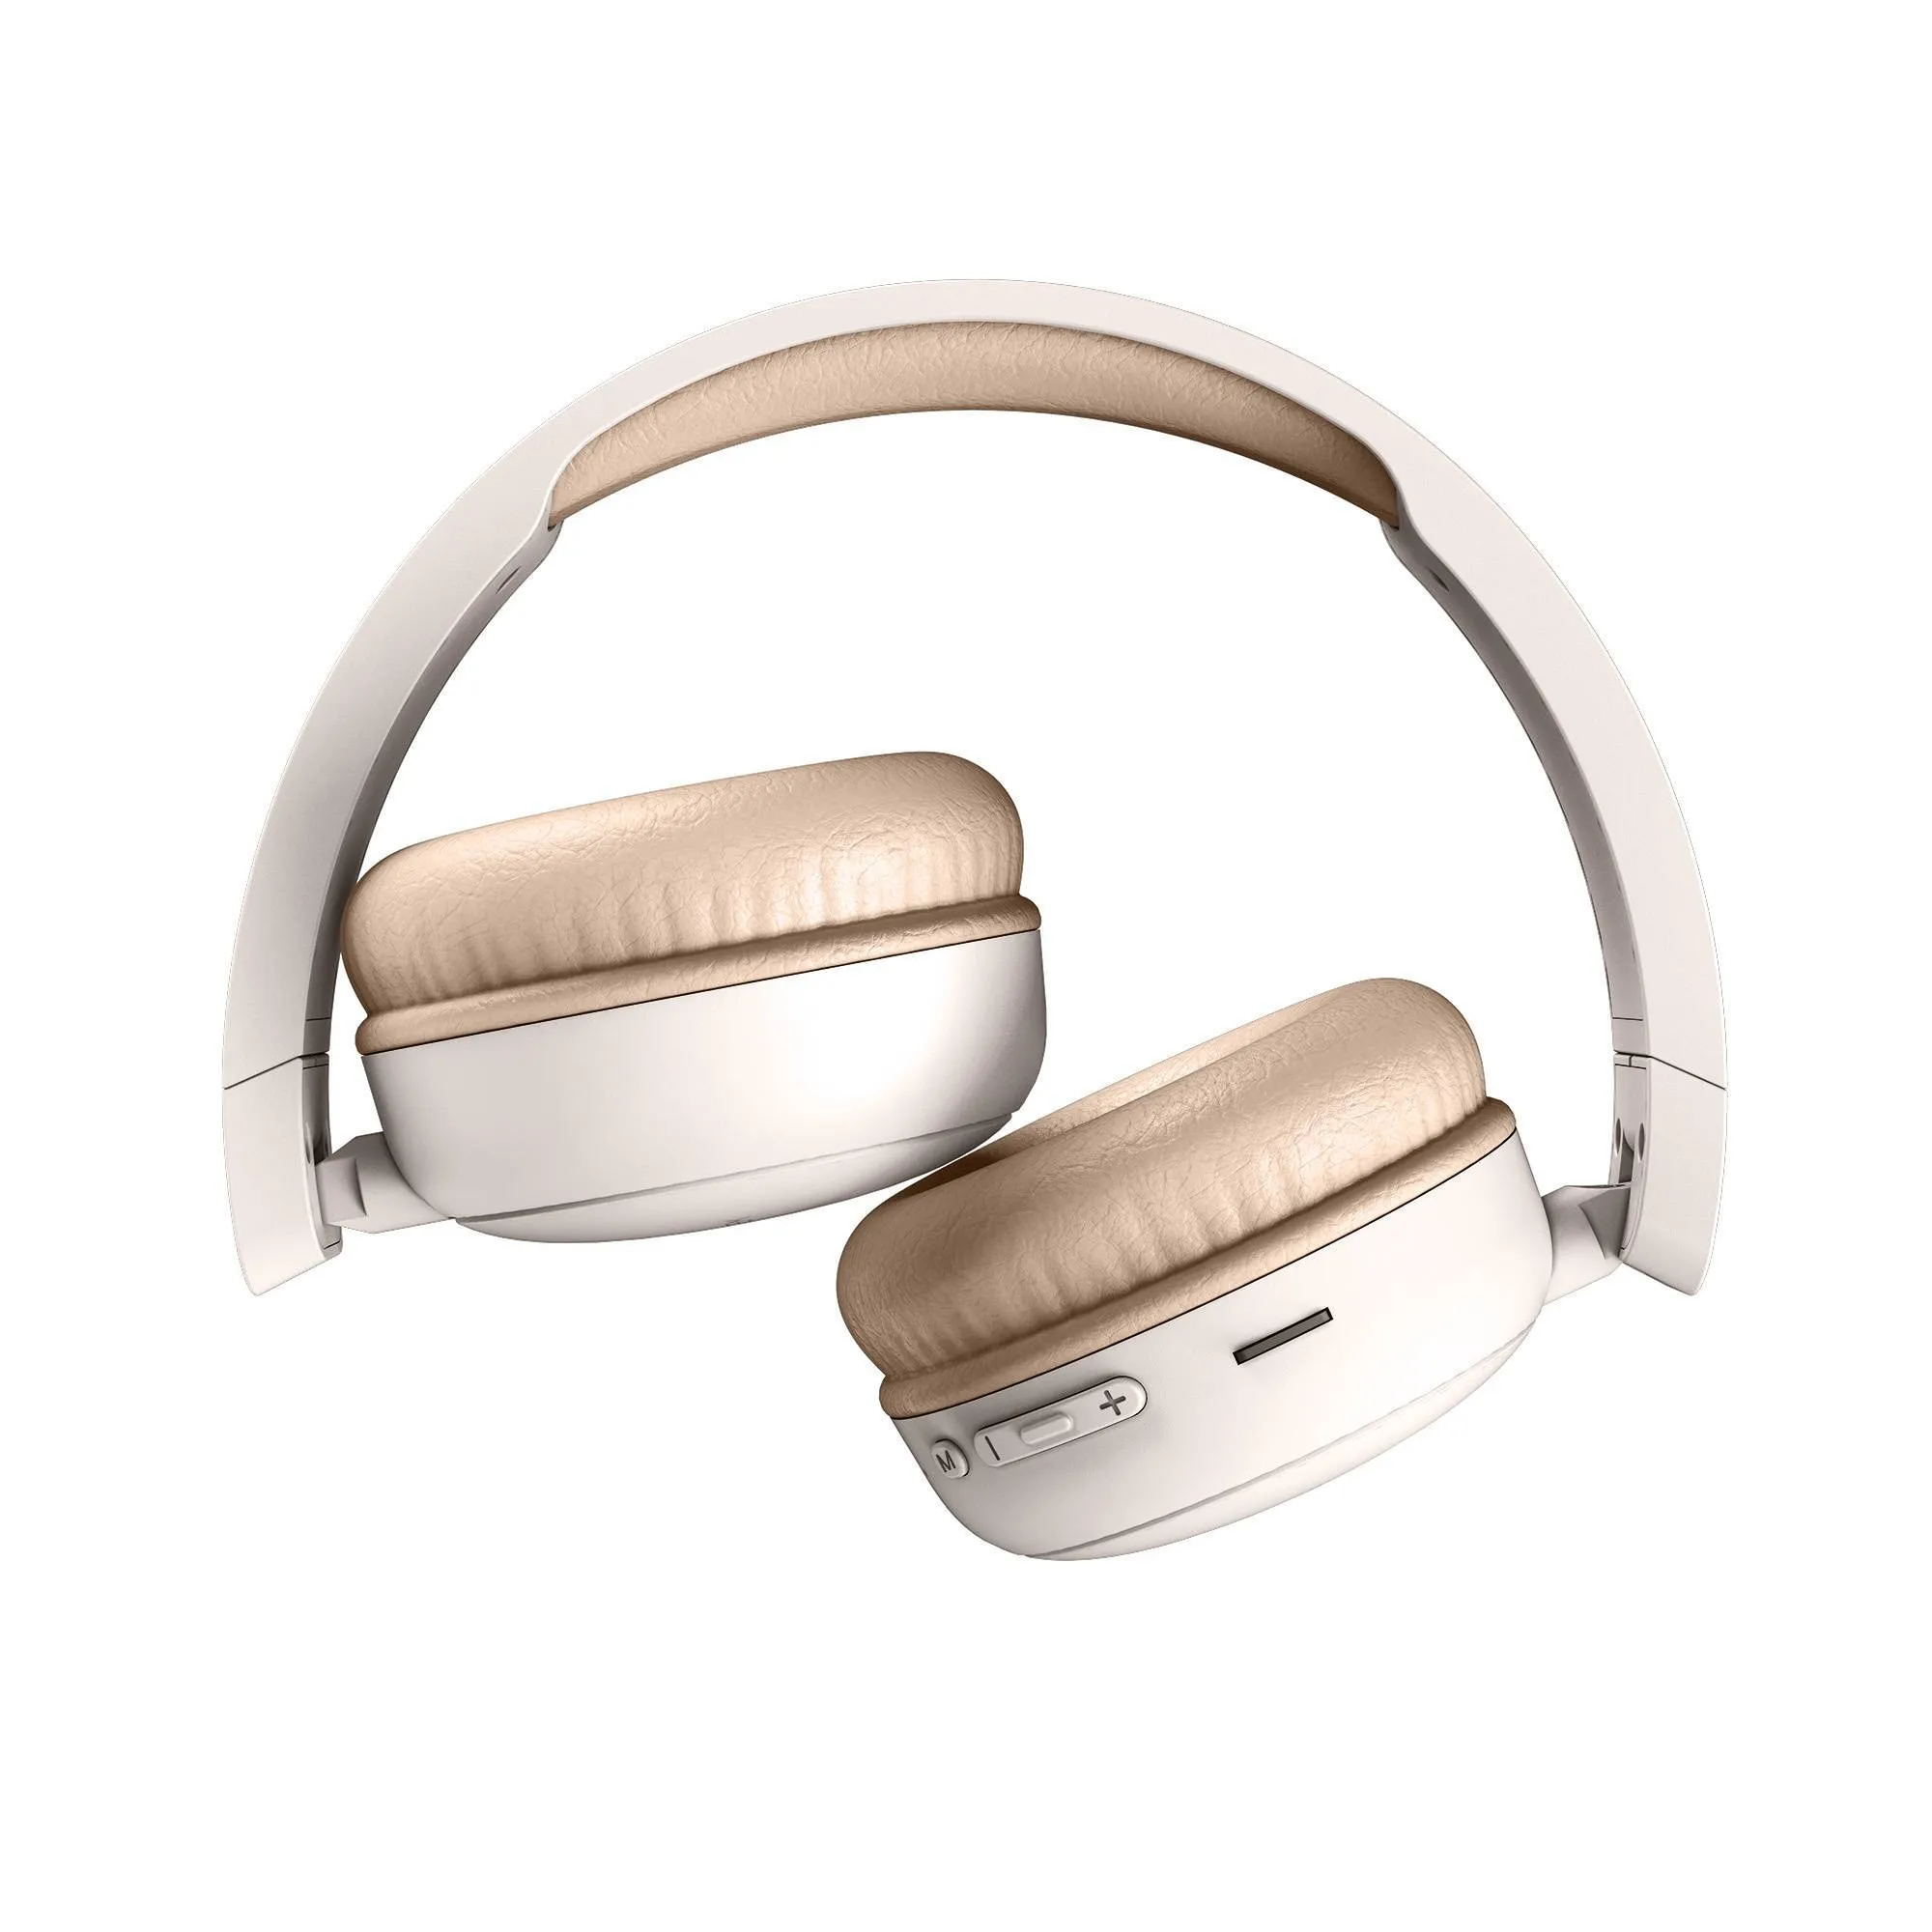 Así son los nuevos auriculares inalámbricos de Sony: gaming, audio espacial  y gran autonomía